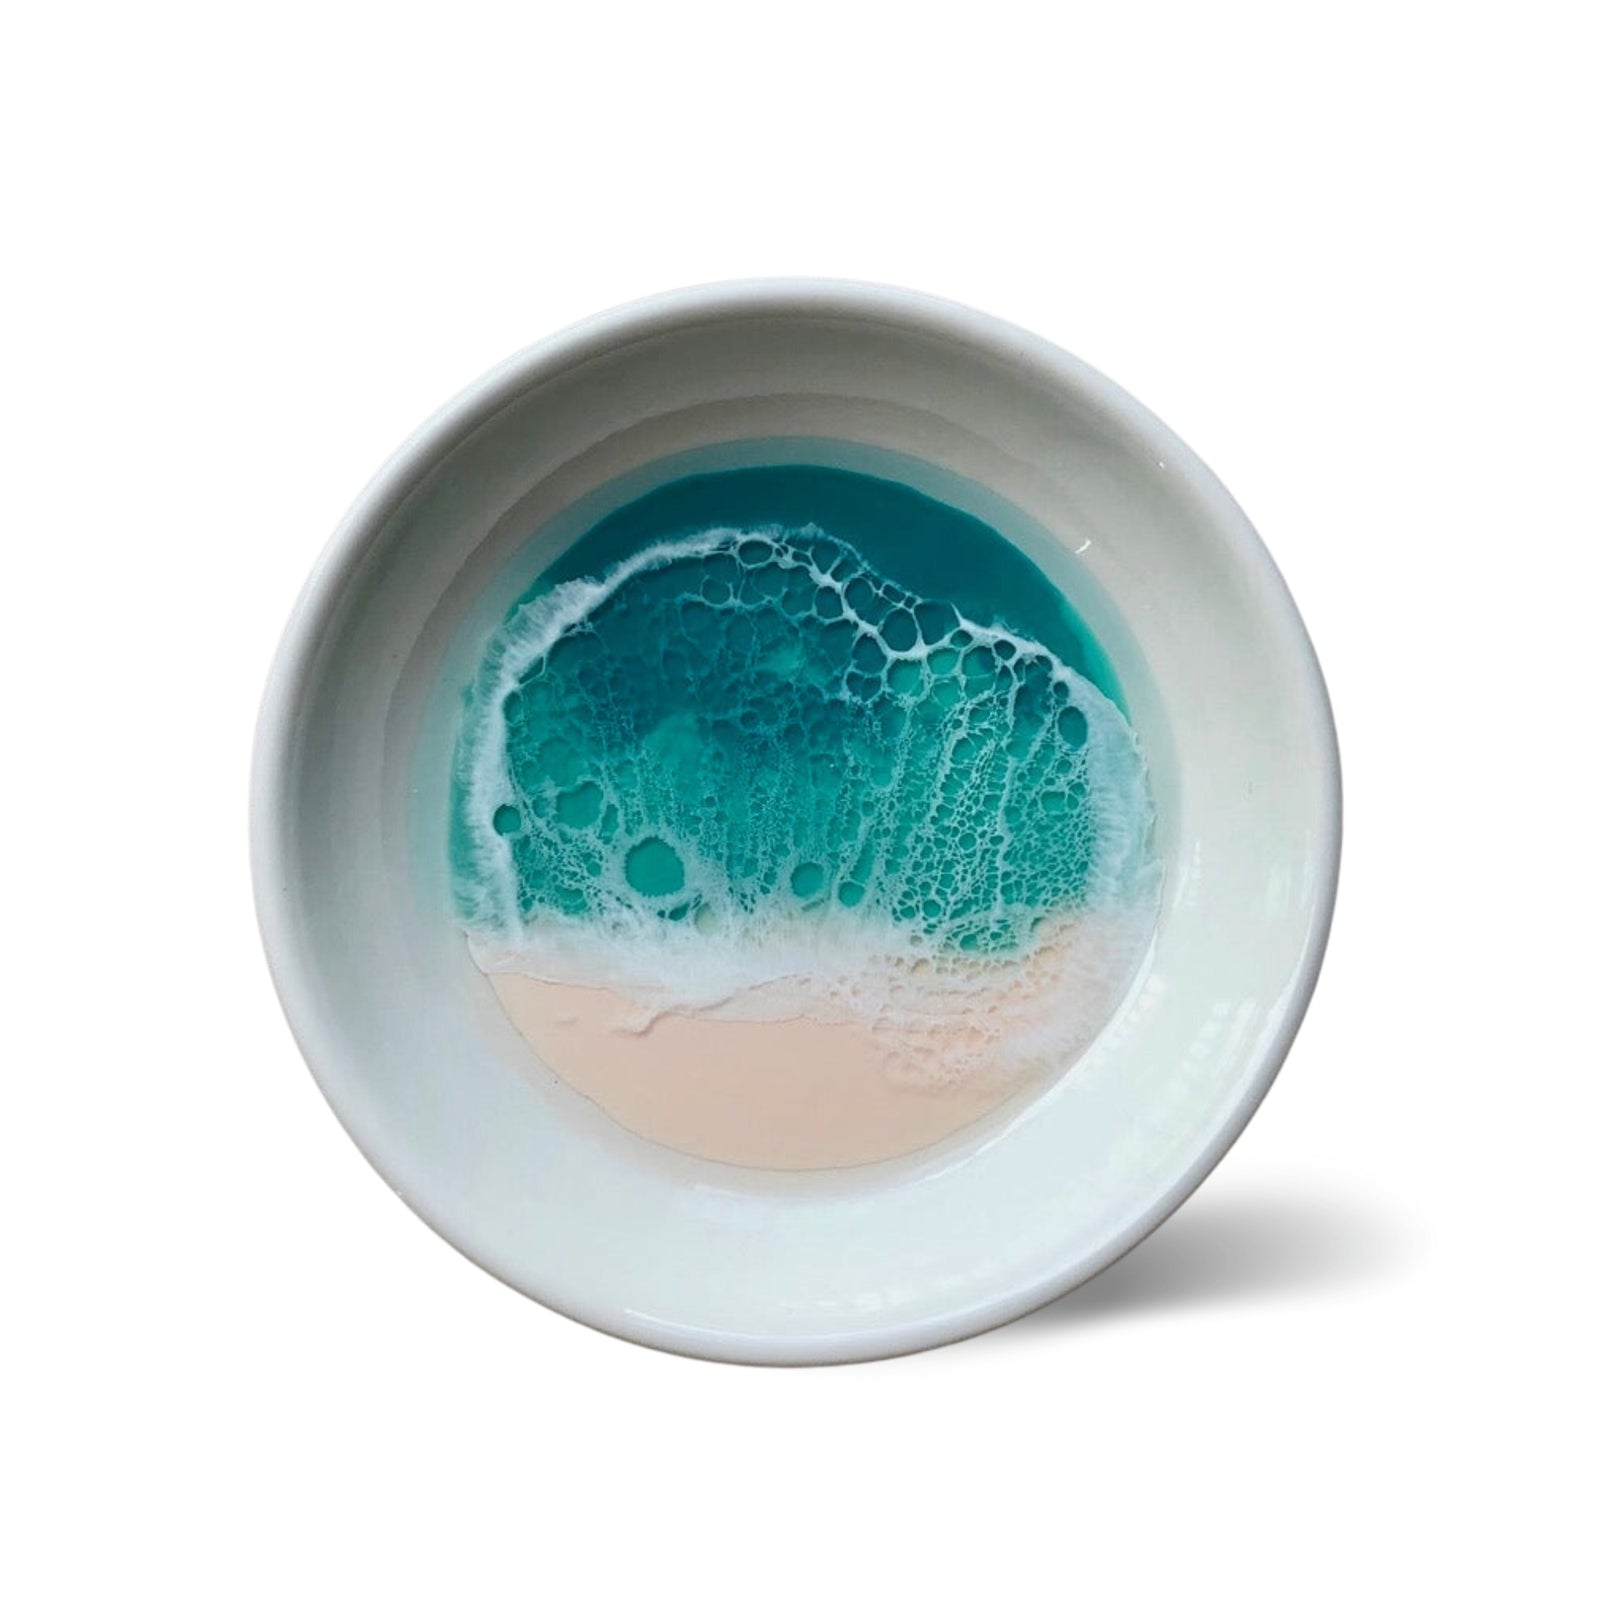 Pop-Up Mākeke - Marr Artworks - 3 Inch Round Ceramic Dish